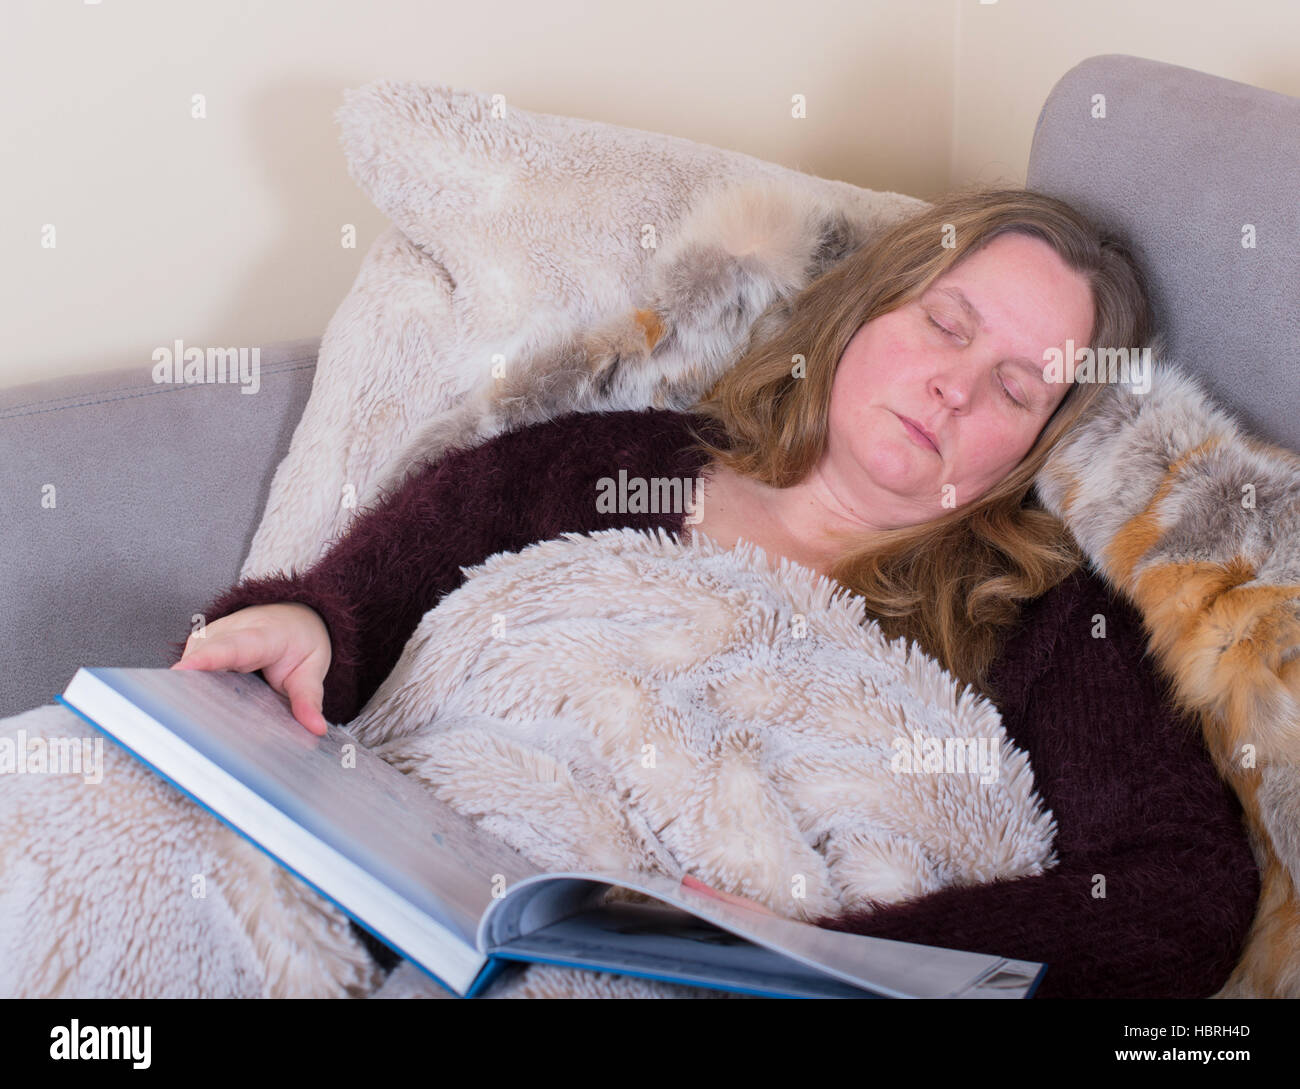 Woman is sick and sleeps Stock Photo